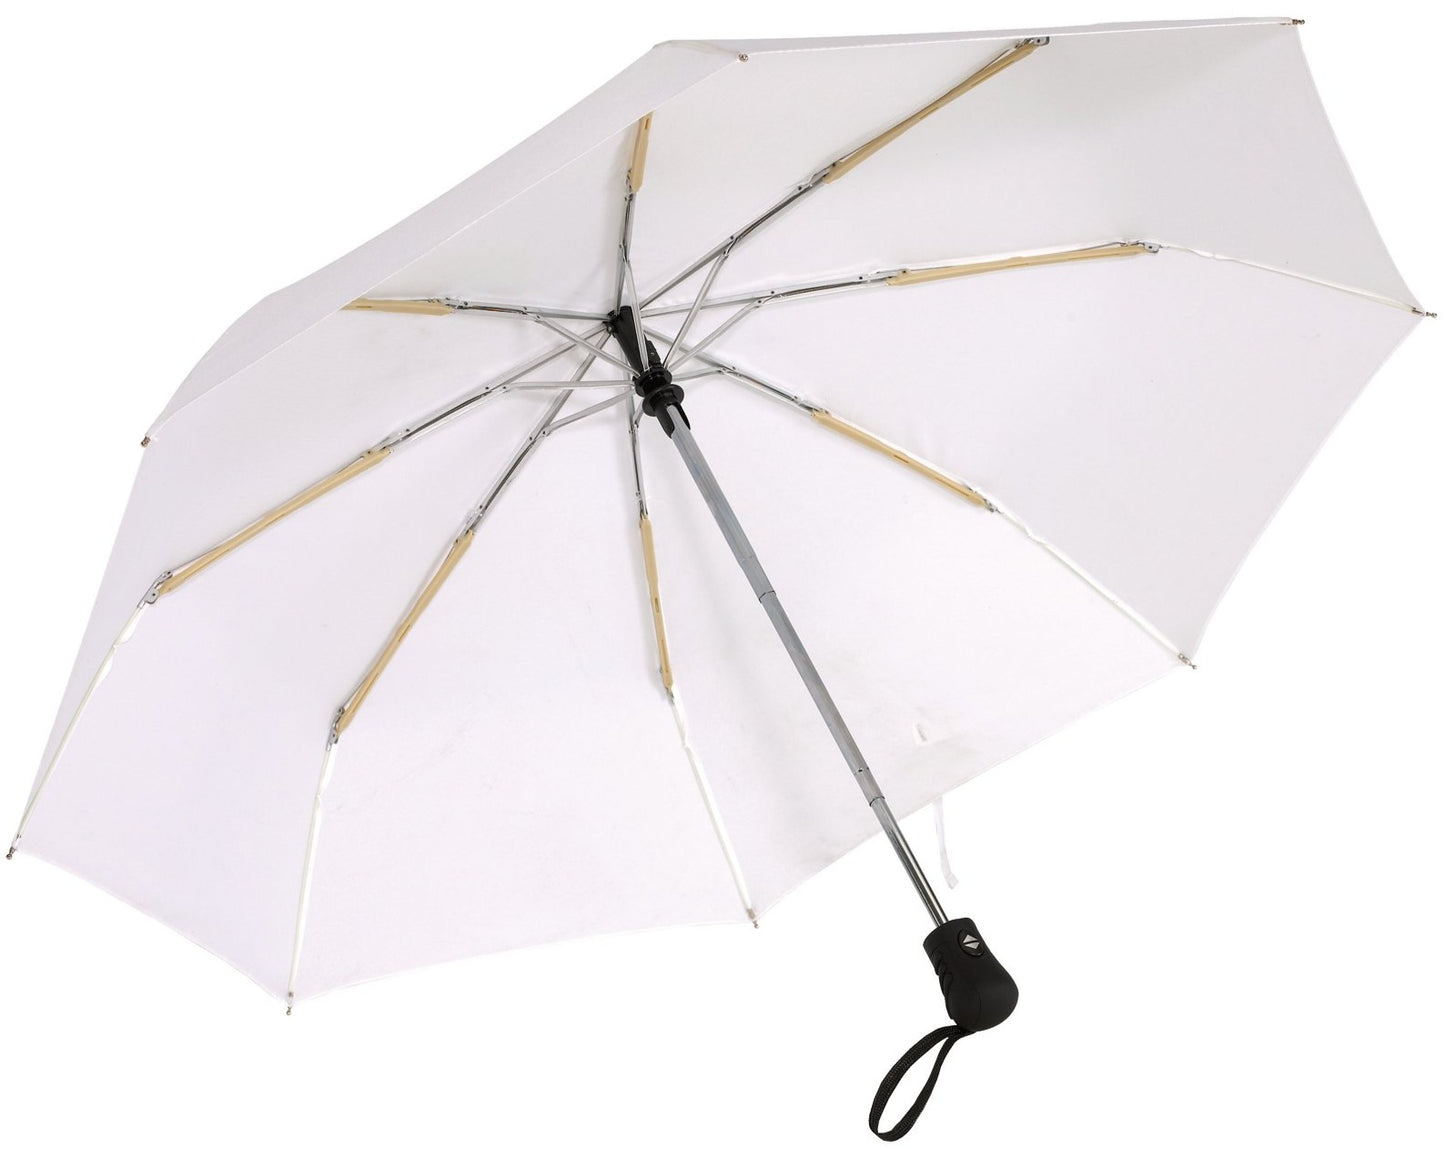 Λευκή ομπρέλα βροχής, μίνι, αντιανεμική και twinmatic.